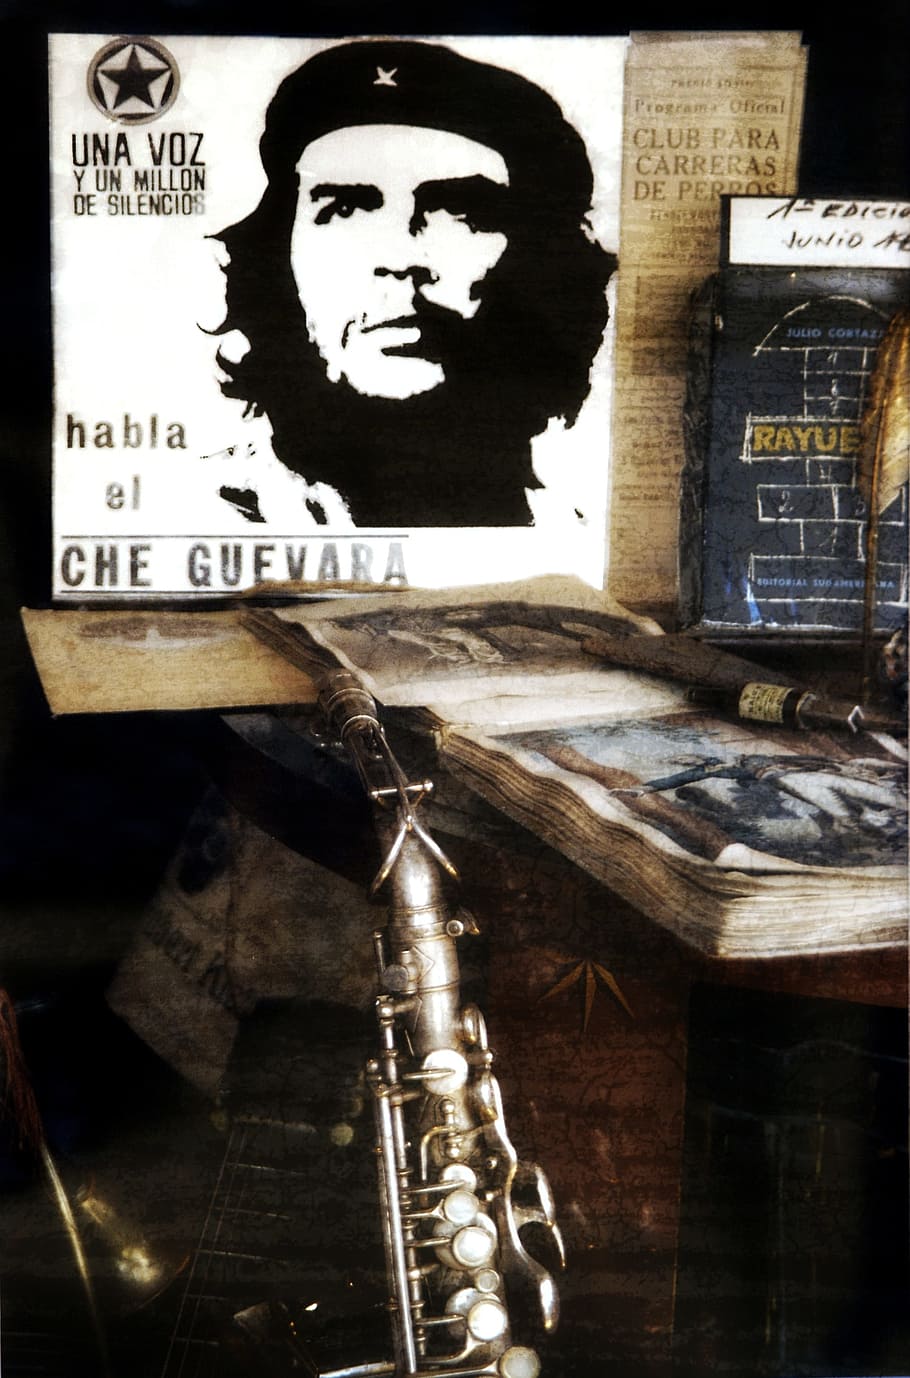 HD wallpaper: gray flute, Still Life, Che Guevara, Music